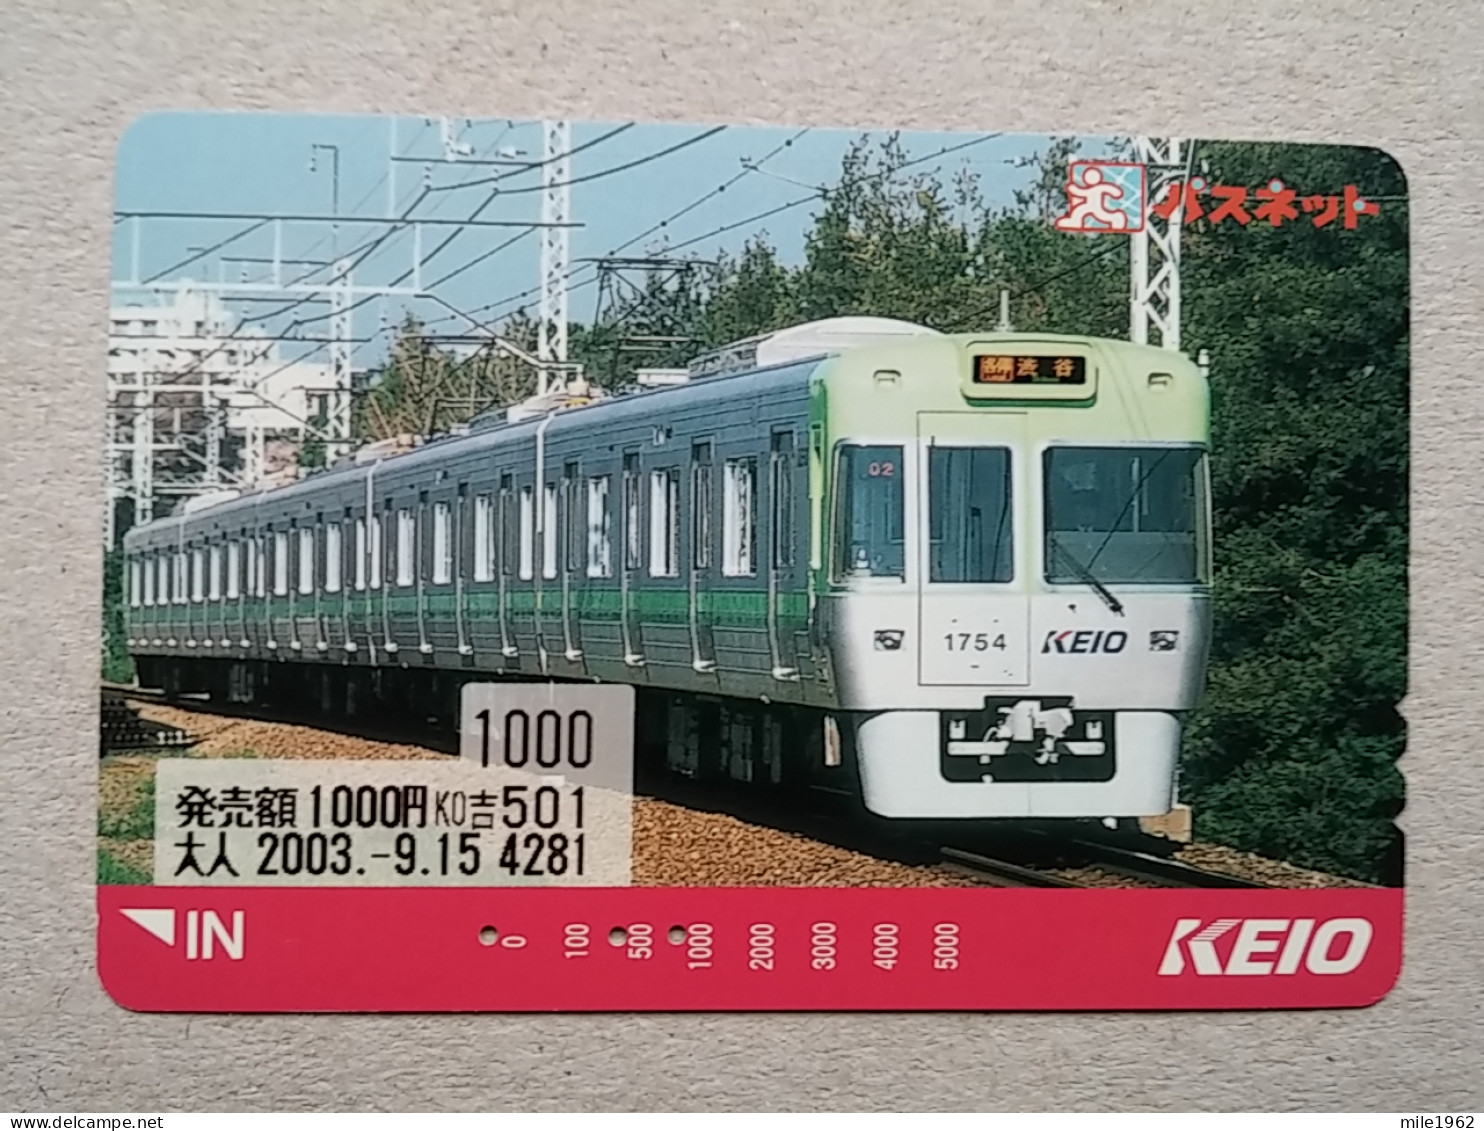 T-616 - JAPAN, Japon, Nipon, Carte Prepayee, Prepaid Card, CARD, RAILWAY, TRAIN, CHEMIN DE FER - Trains